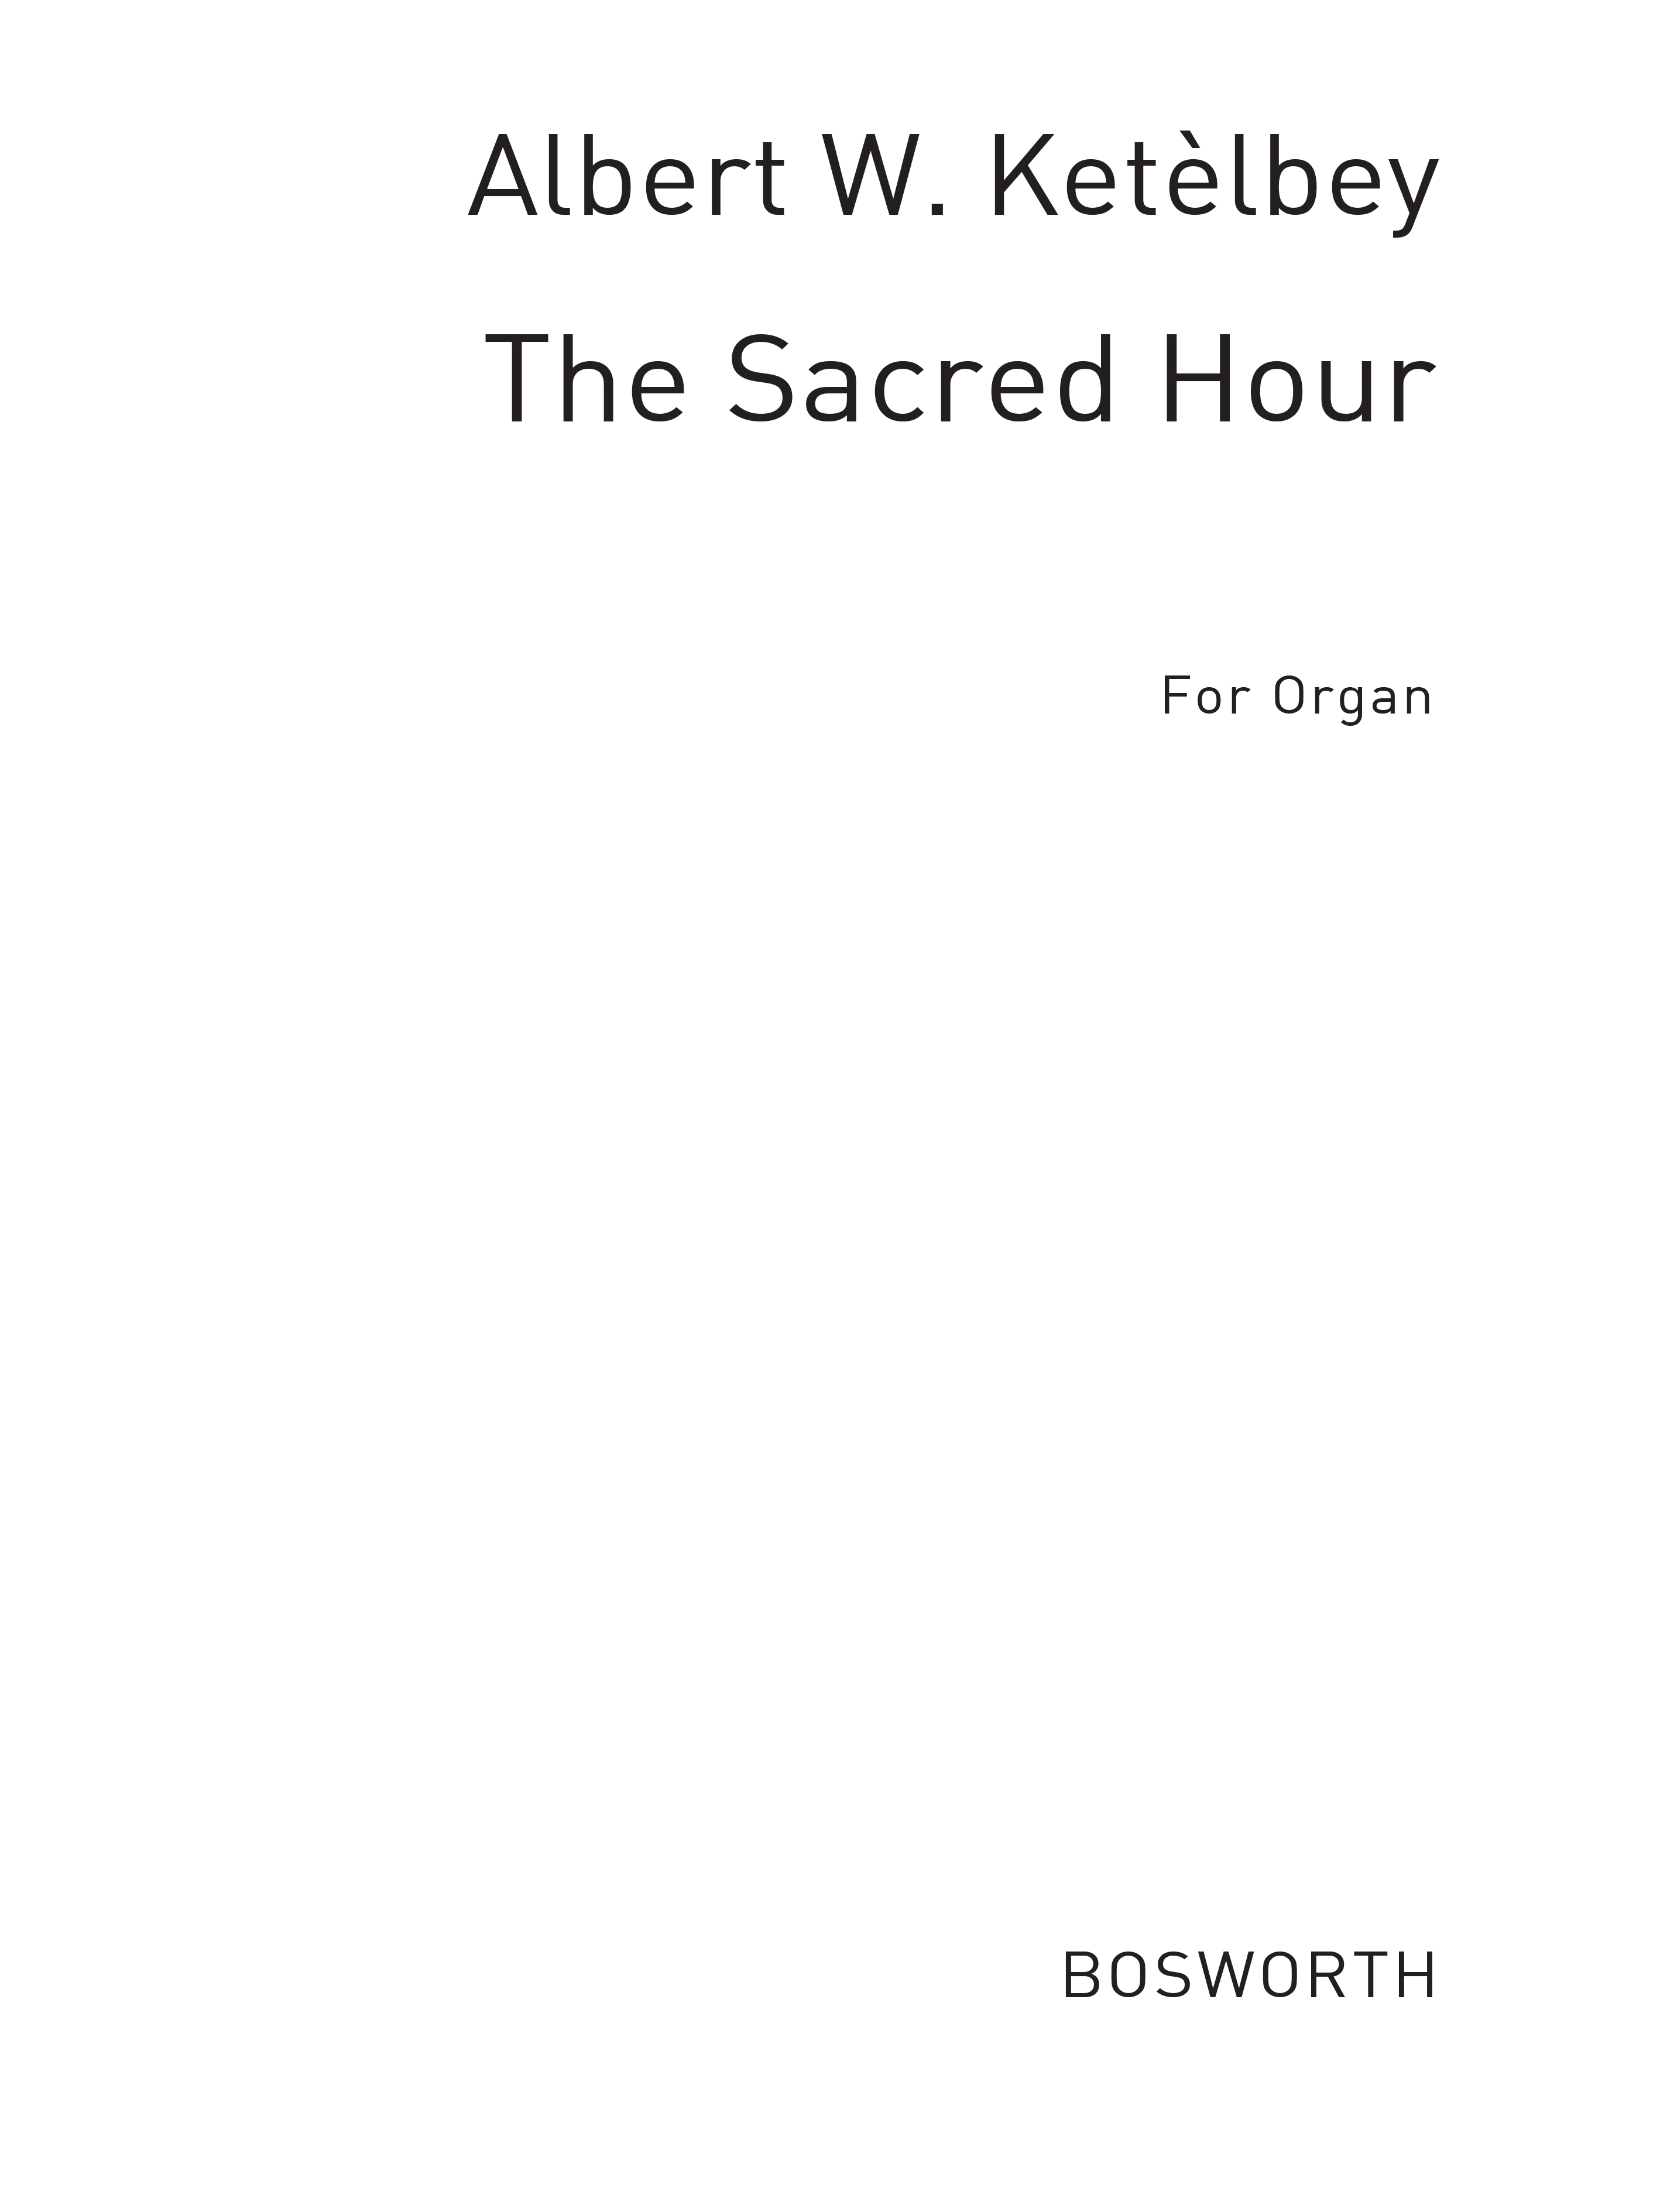 Albert Ketlbey: The Sacred Hour: Organ: Instrumental Work